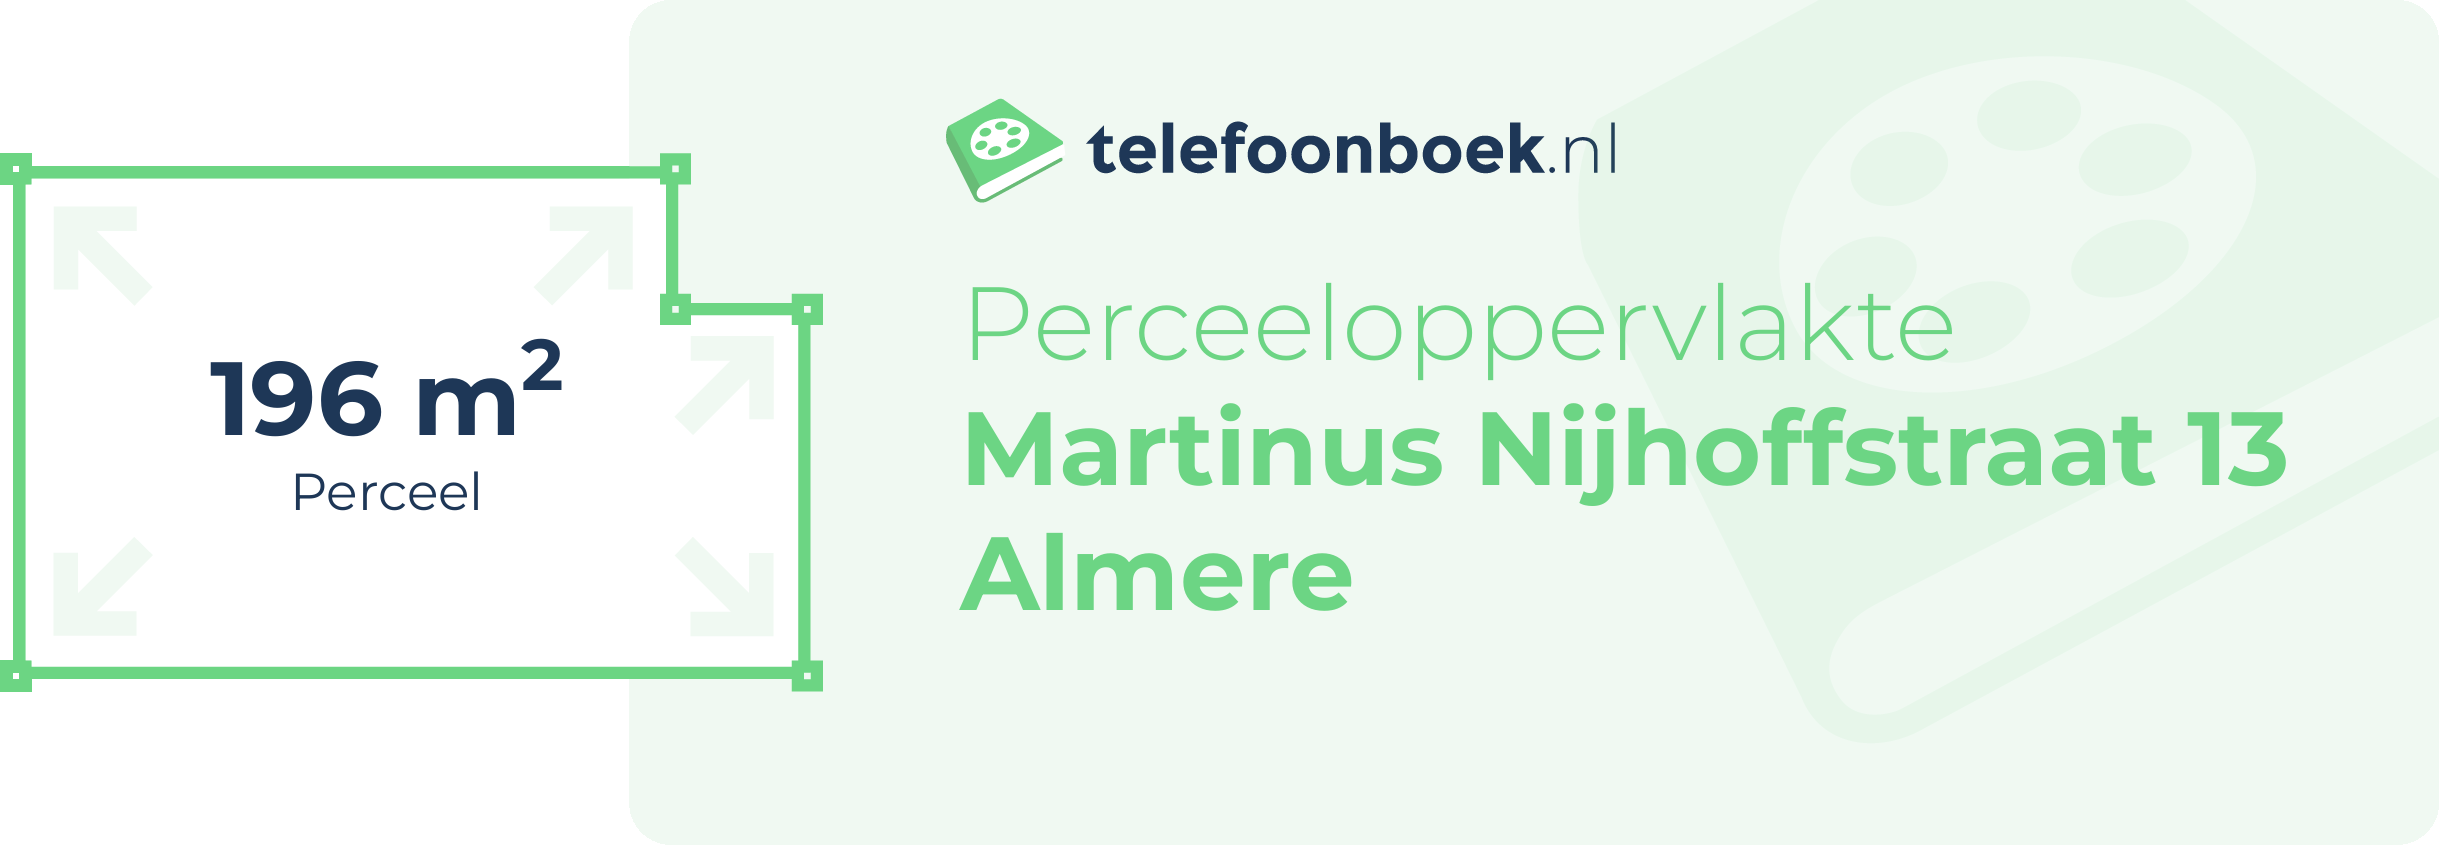 Perceeloppervlakte Martinus Nijhoffstraat 13 Almere